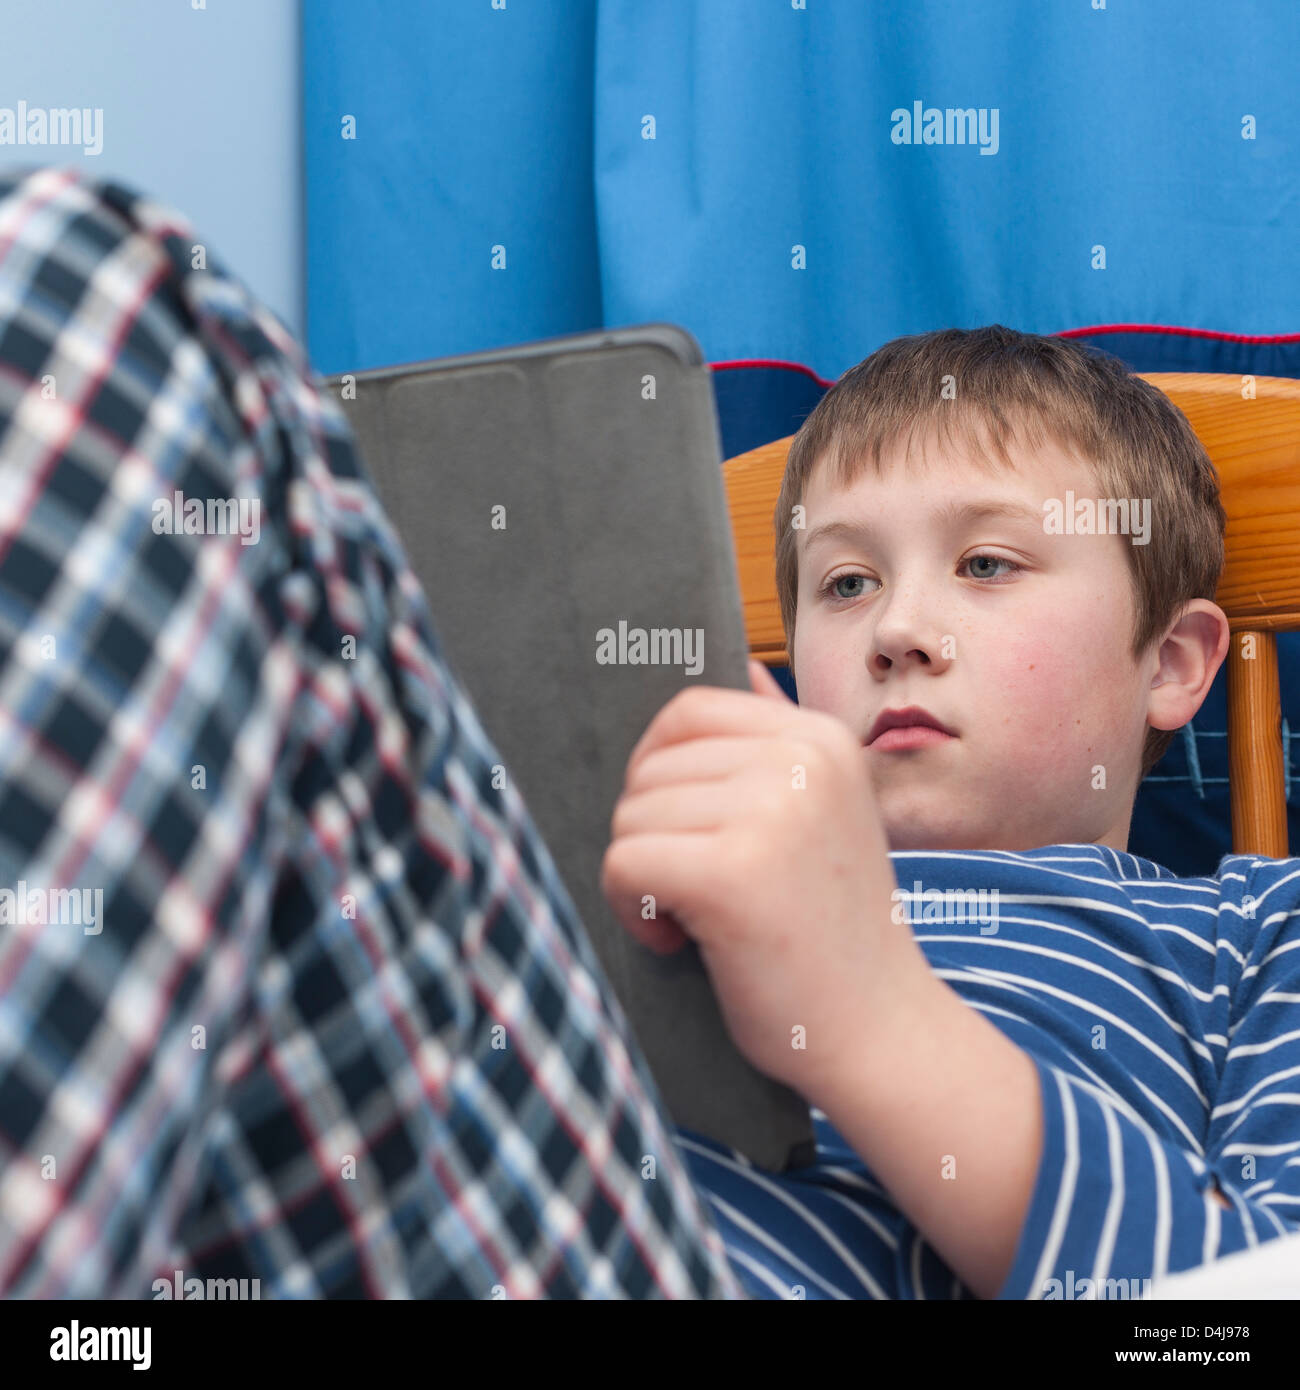 Ein neun Jahre alter Junge mit seinem Ipad Tablet in seinem Schlafzimmer Stockfoto